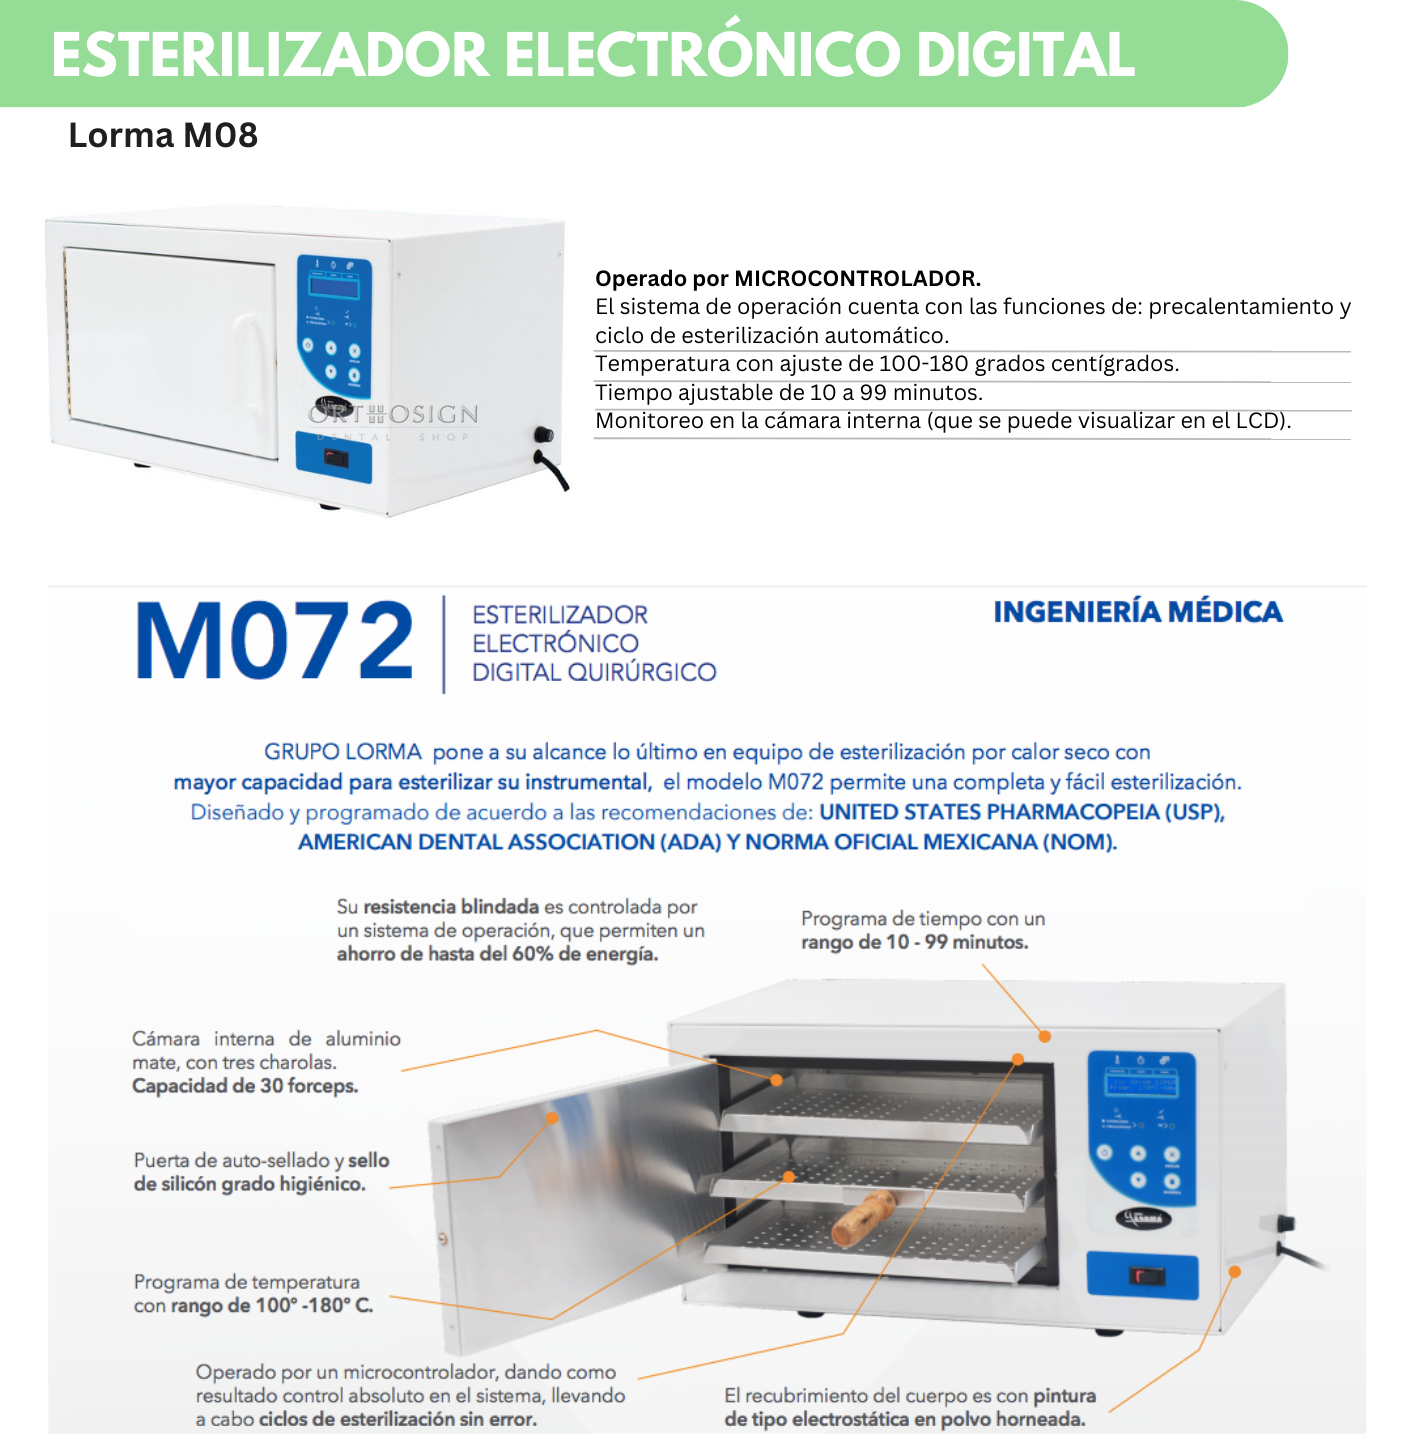 Esterilizador Electrónico Digital Lorma M08